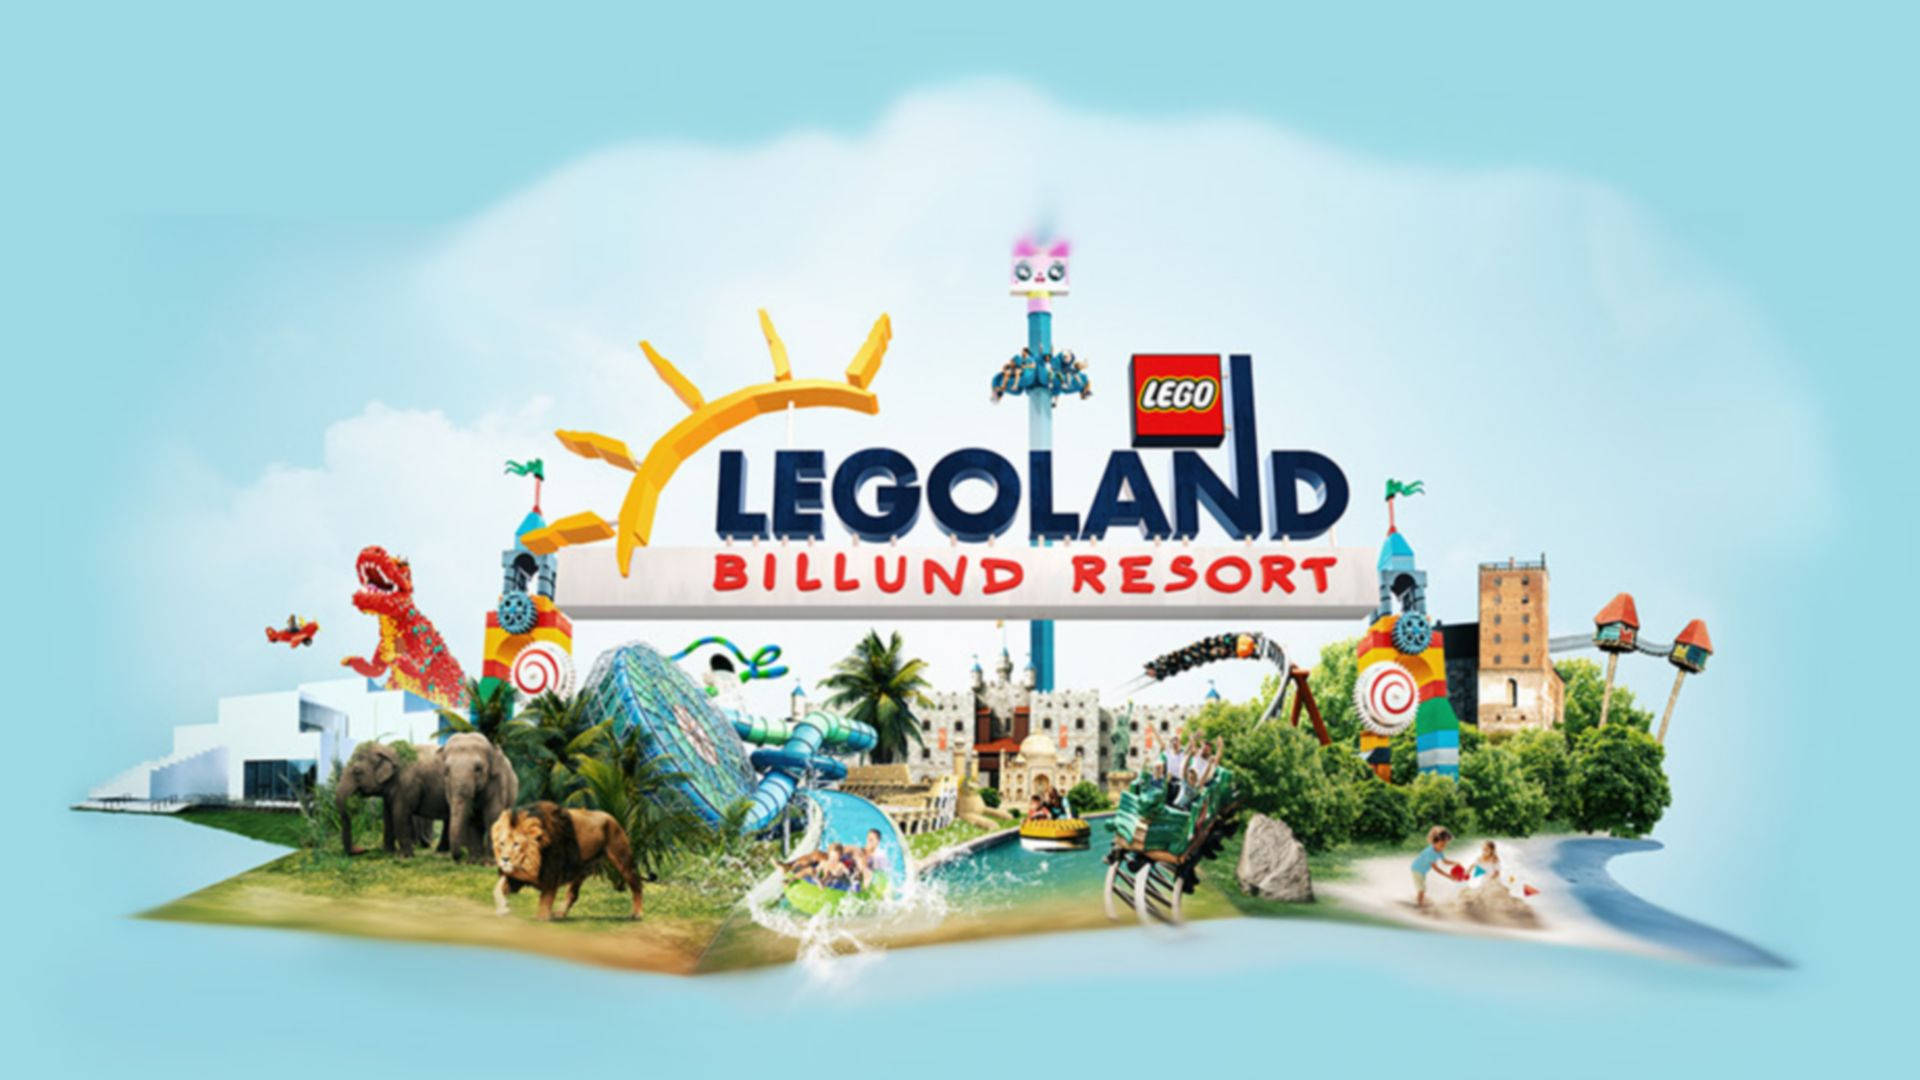 Legolandbillund Resort Wallpaper